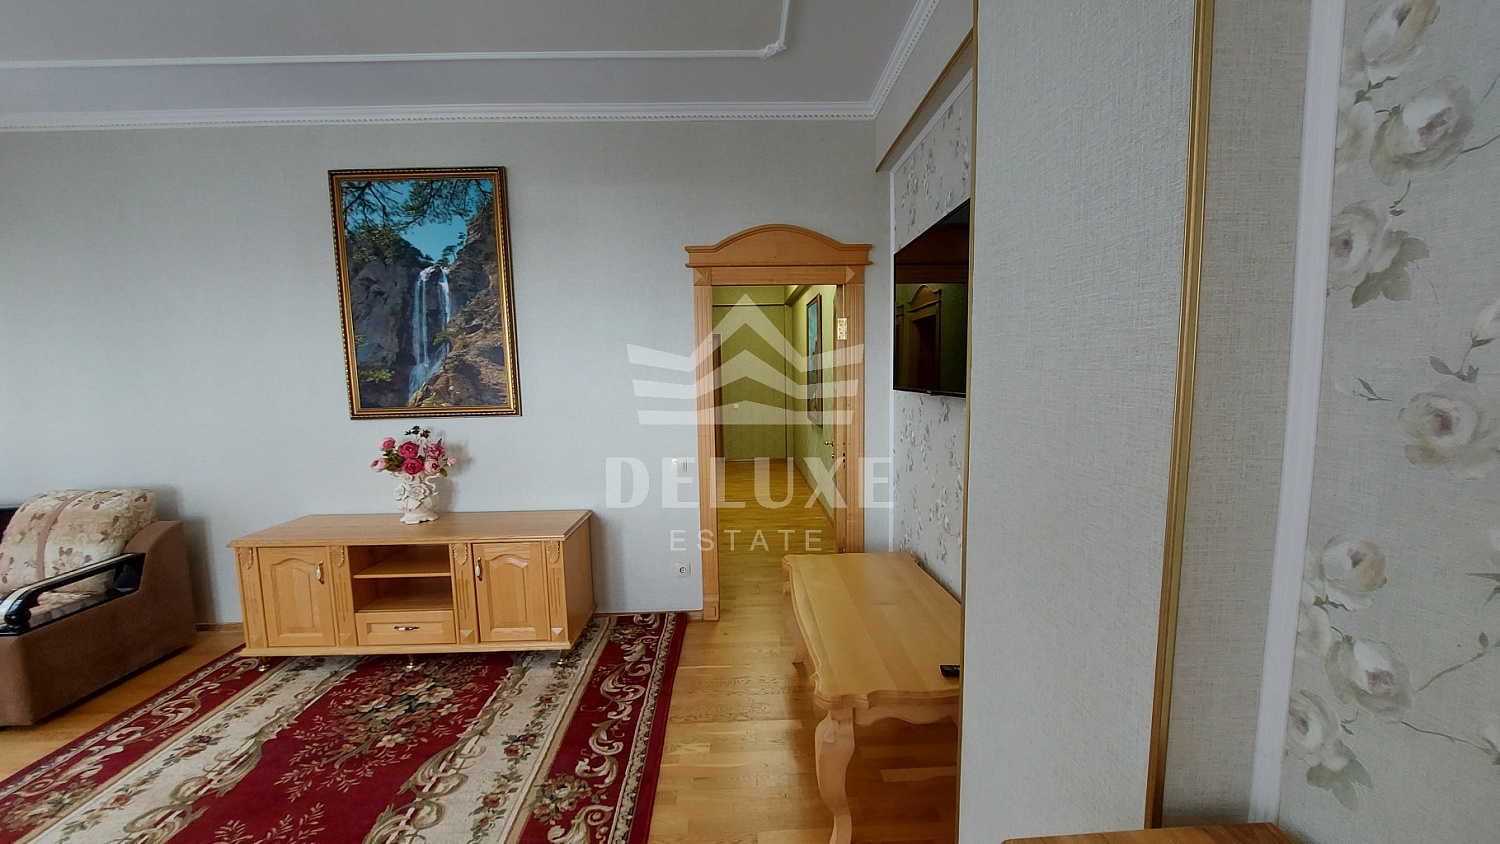 Продажа! 3-х комнатная квартира с видовой террасой в Ялте жк «Дарсан Палас»